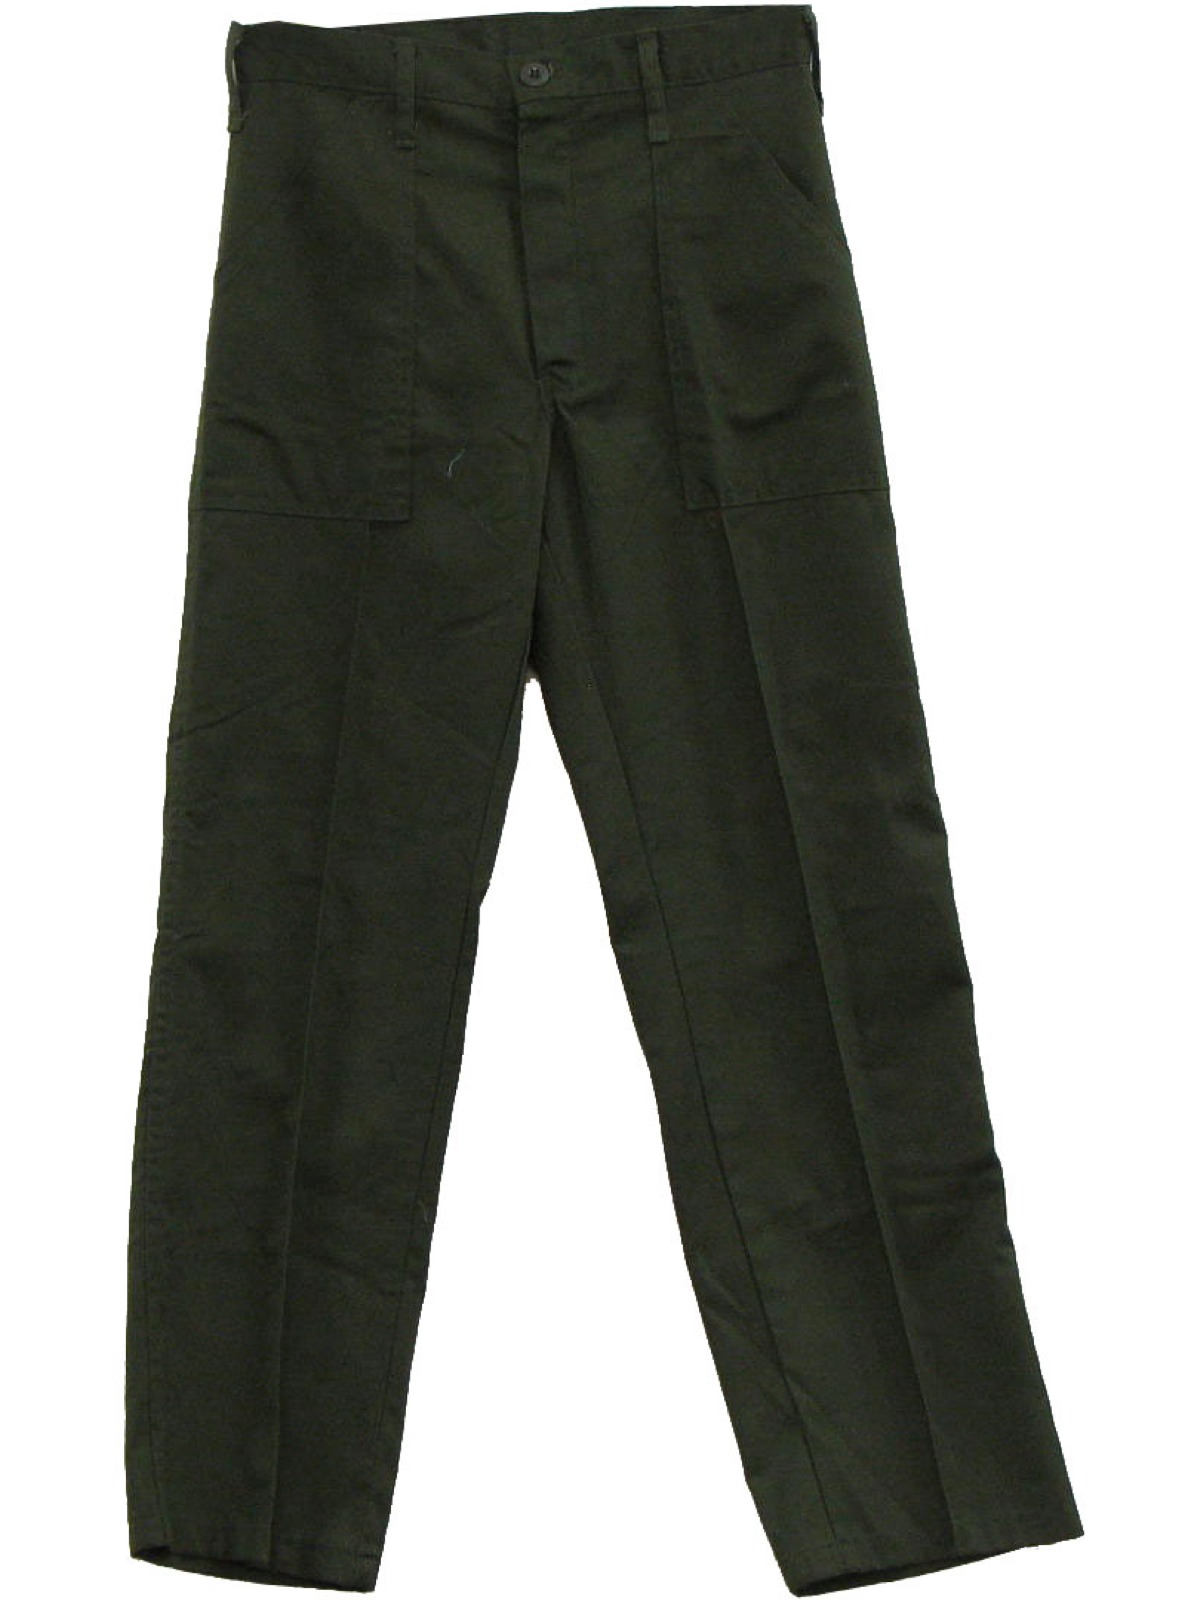 Retro 70s Pants (Gung Ho) : 70s -Gung Ho- Mens army green cotton ...